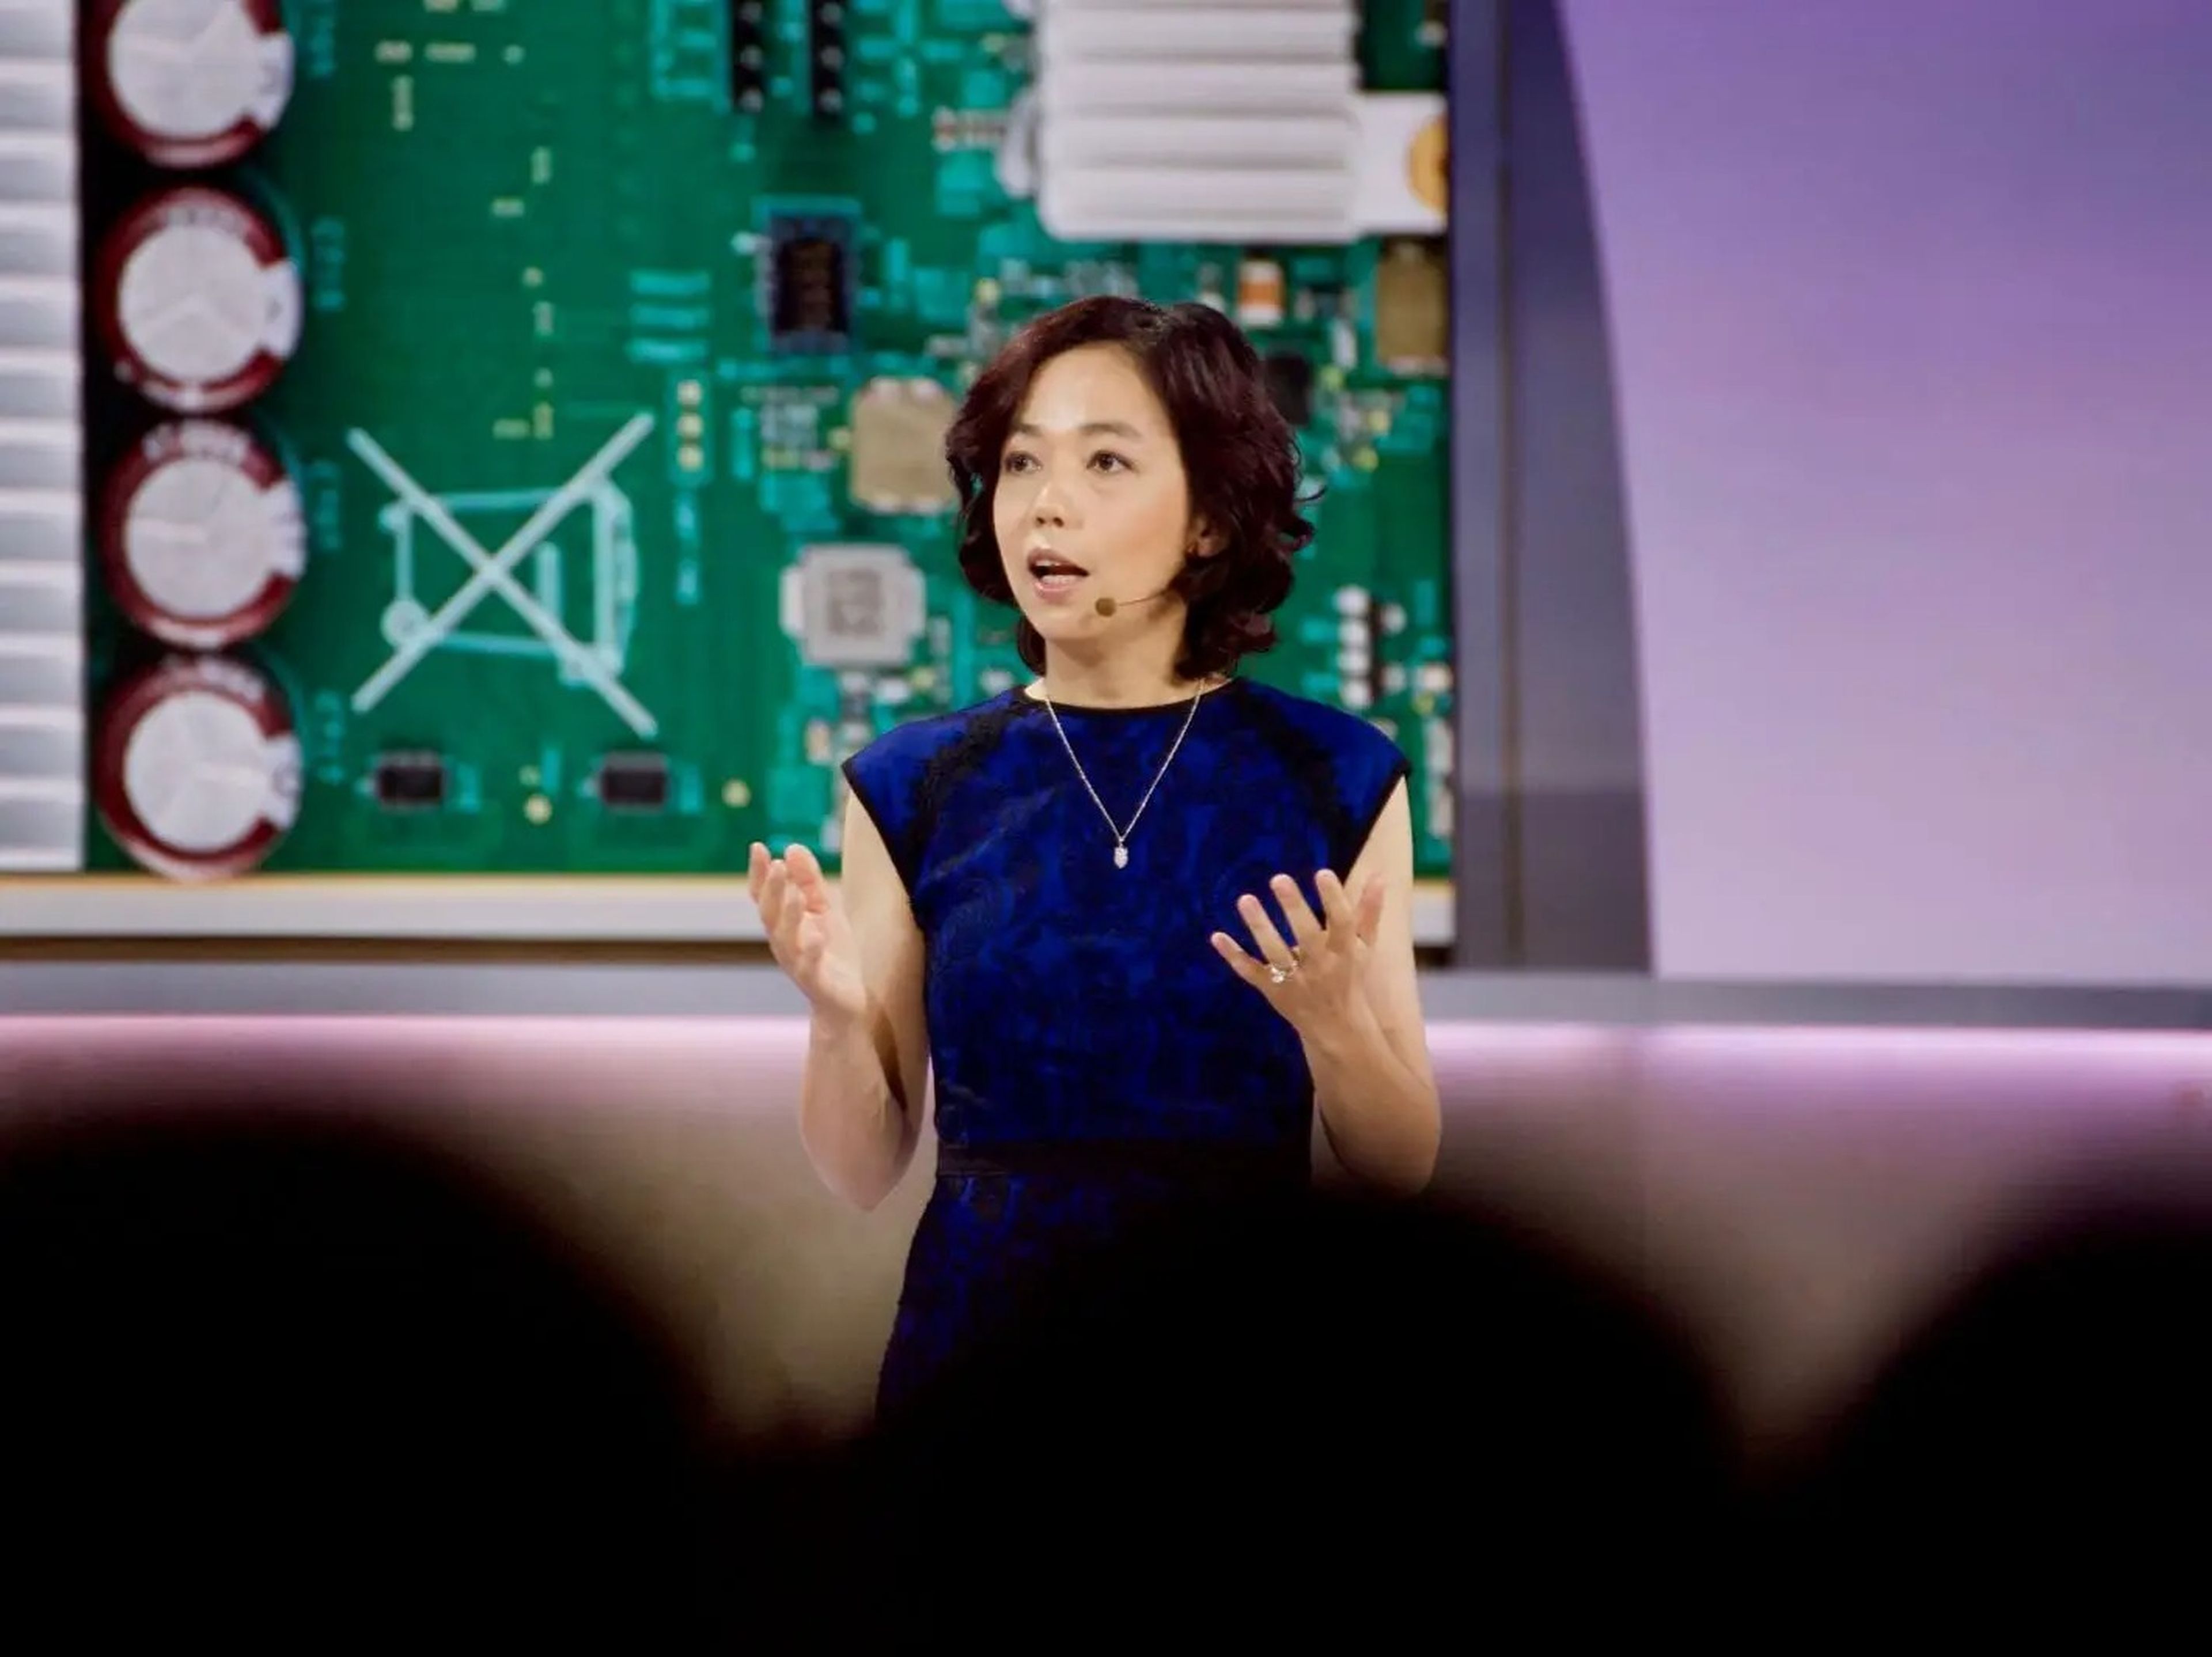 La exvicepresidenta de Google, Fe-Fei Li, es conocida por haber creado ImageNet, una gran base de datos diseñada para el reconocimiento visual de objetos.